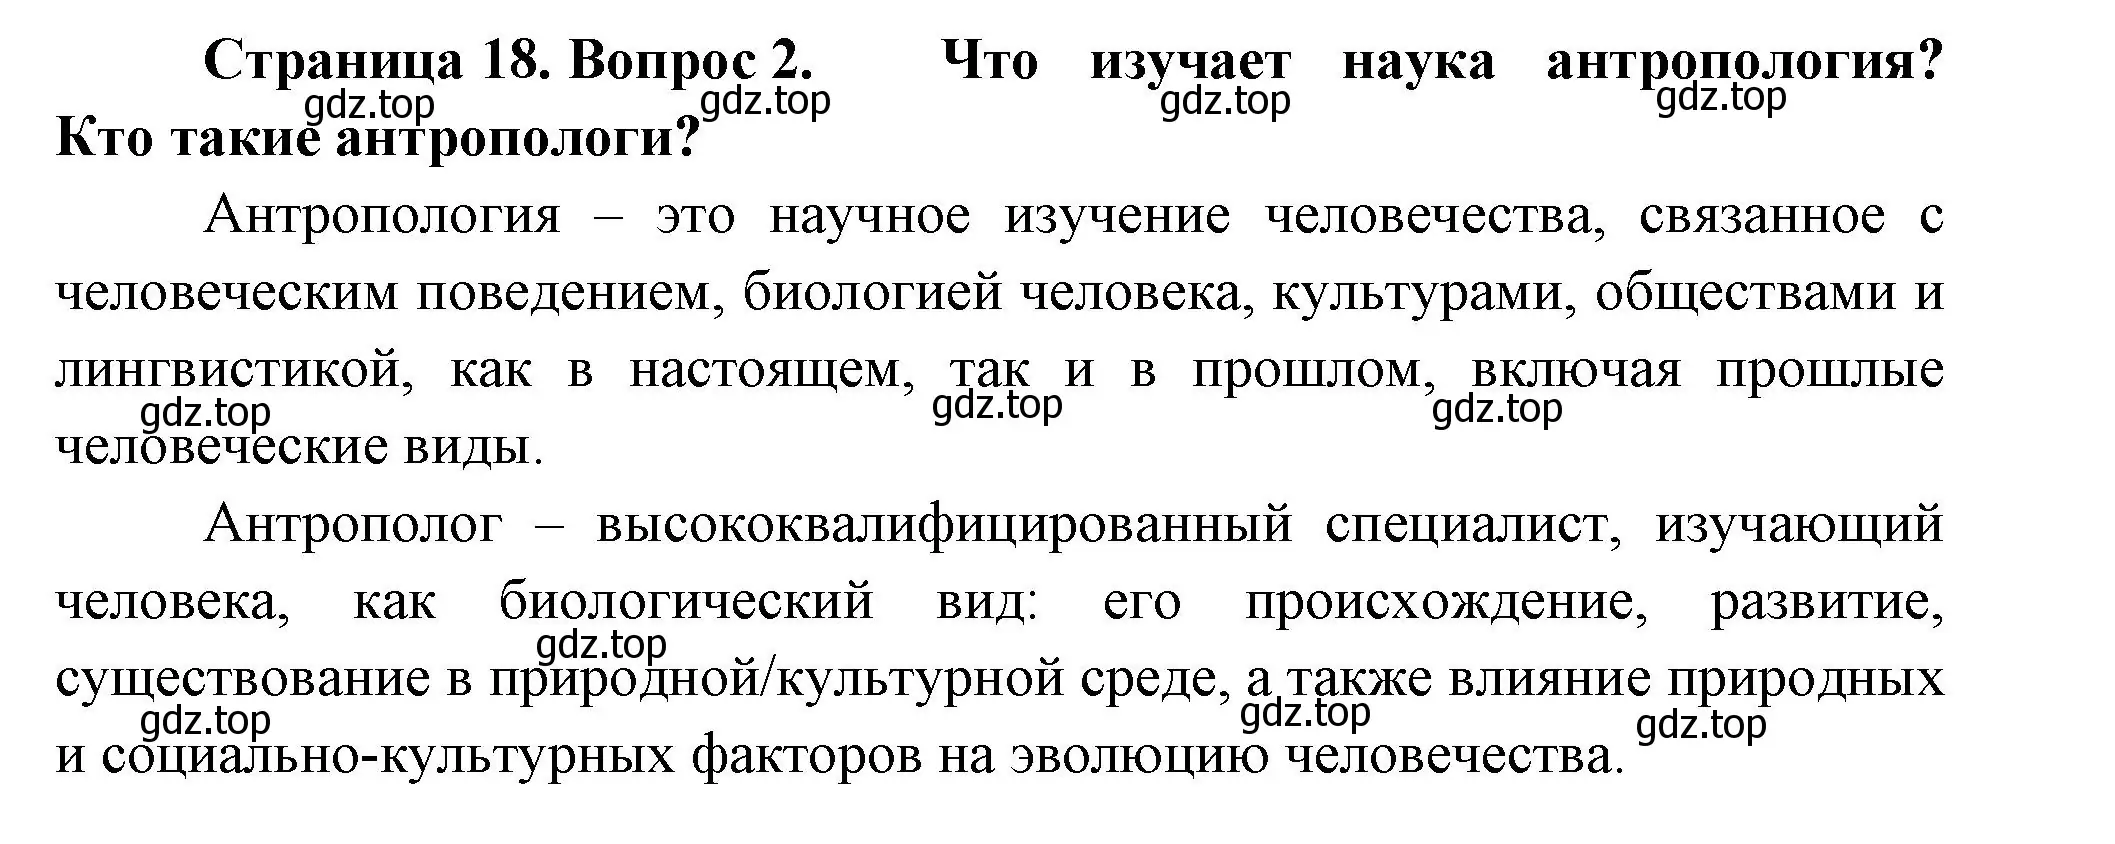 Решение номер 2 (страница 18) гдз по биологии 9 класс Пасечник, Каменский, учебник